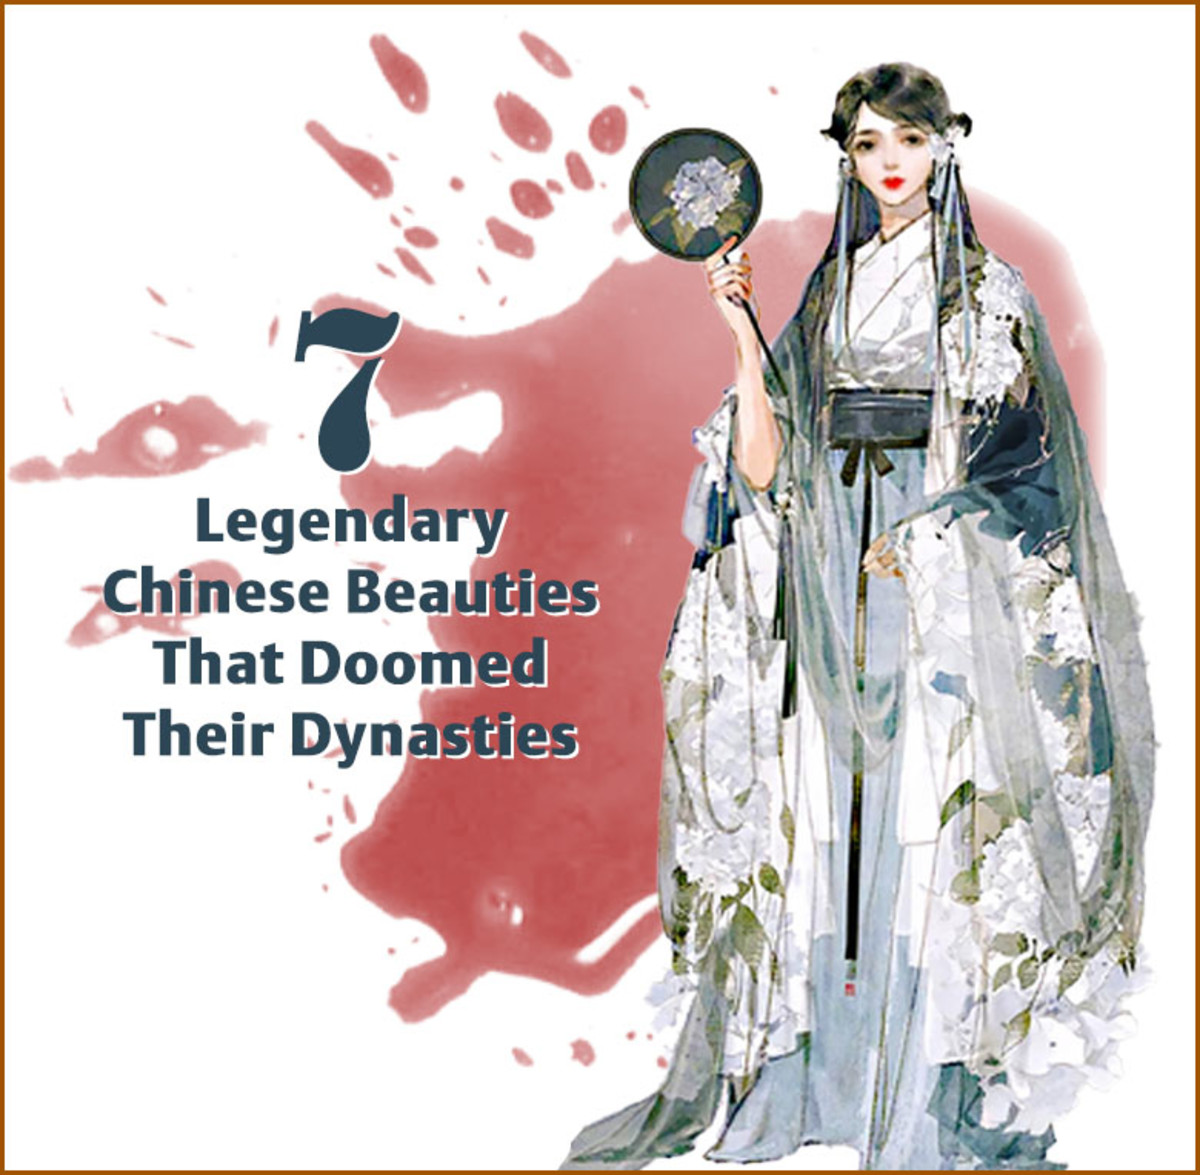 中国历史上的几个王朝都因为统治者迷恋传说中的美女而灭亡。